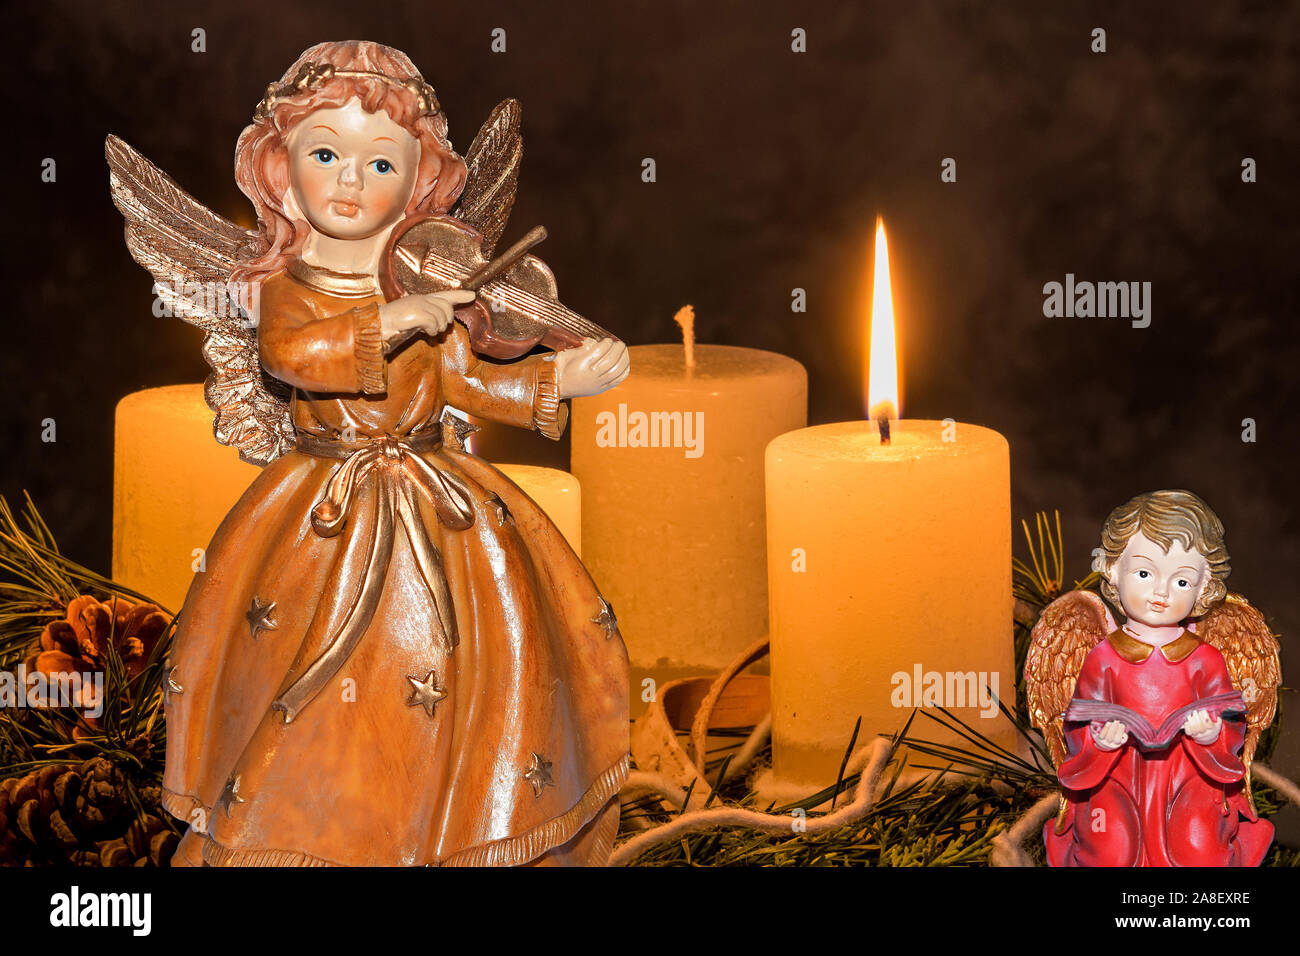 Ein Adventskranz zu Weihnachten sorgt für romatinsche Stimmung in der stillen Avvento Zeit, 1. Avvento, drei brennende Kerzen, Engel, Weihnachtsengel mi Foto Stock